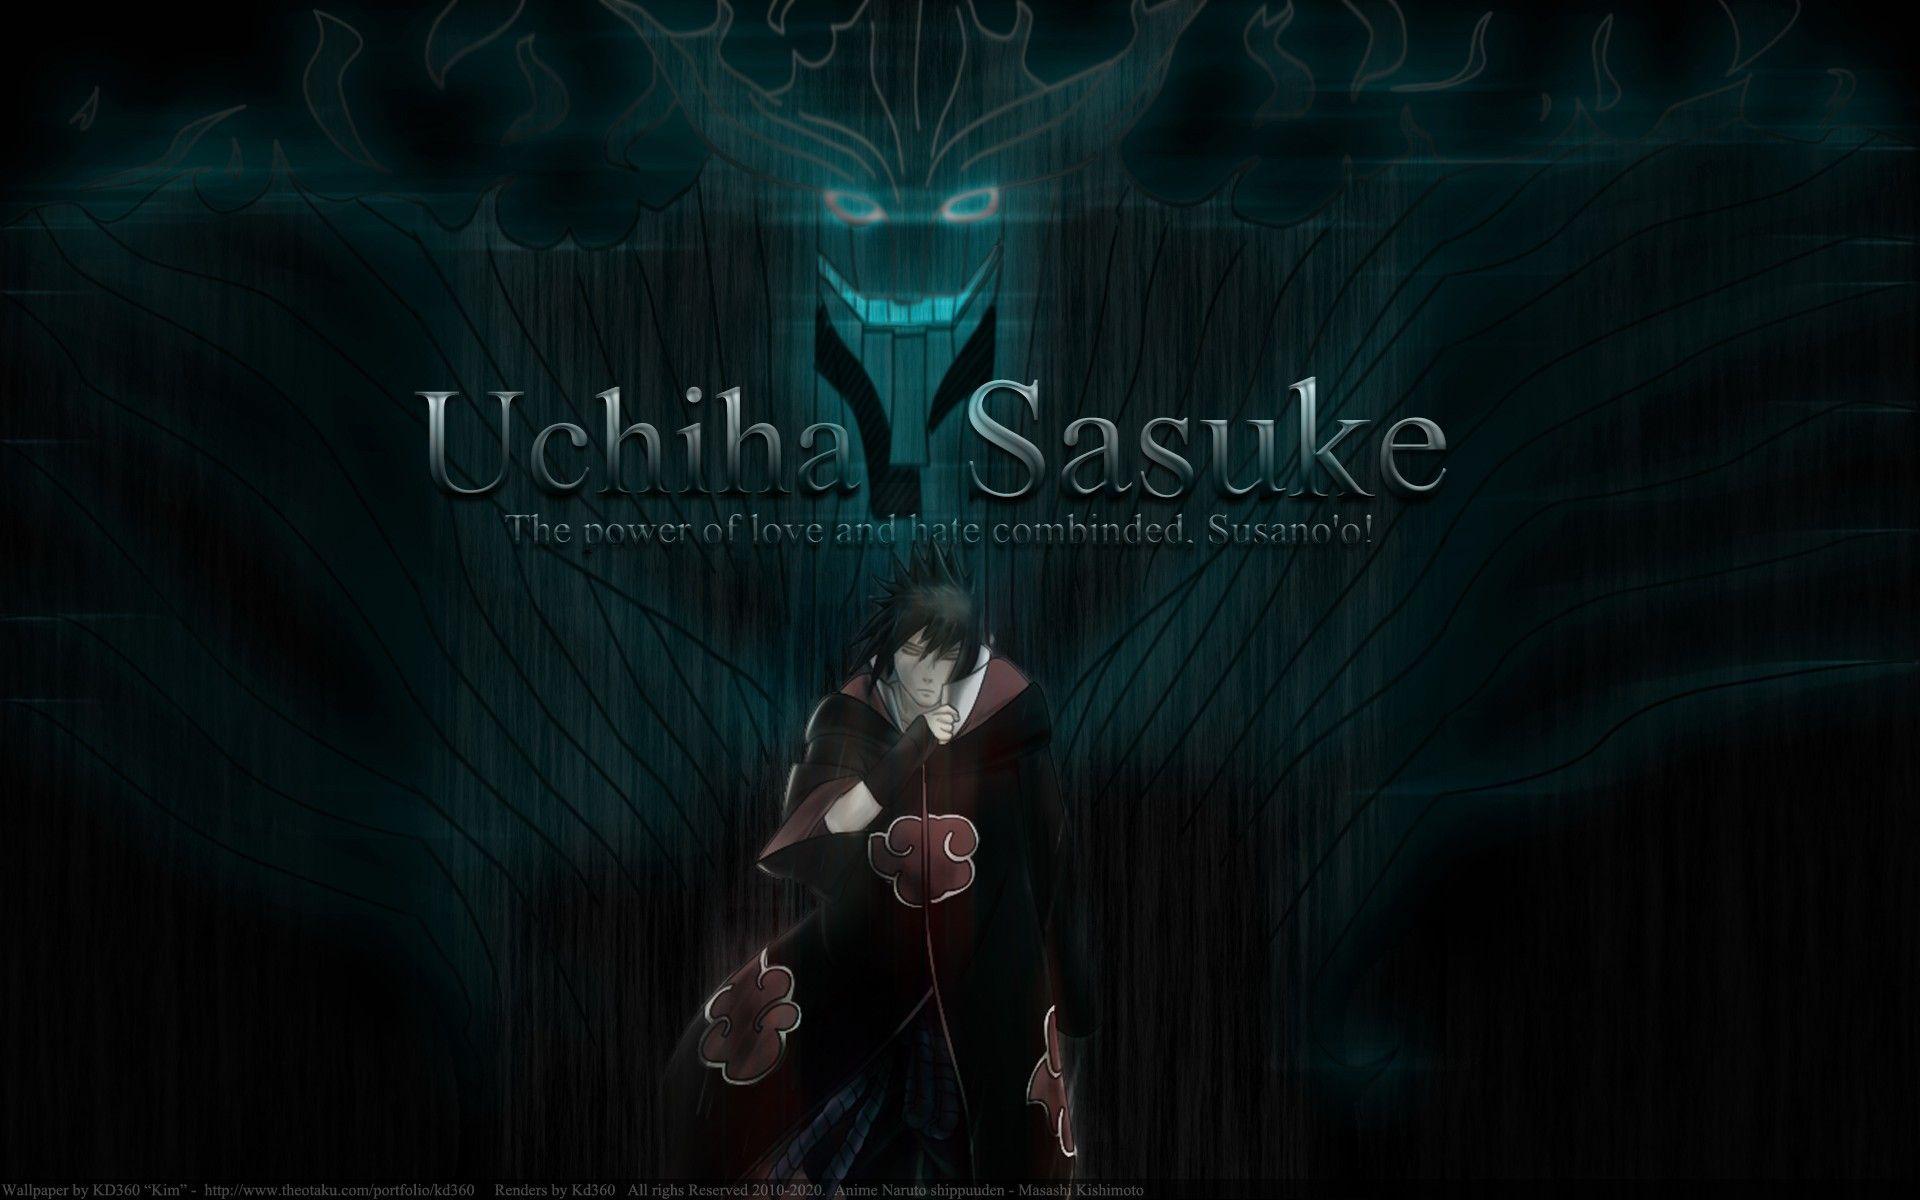 Uchiha Sasuke Wallpaper, 47 Uchiha Sasuke Image and Wallpaper